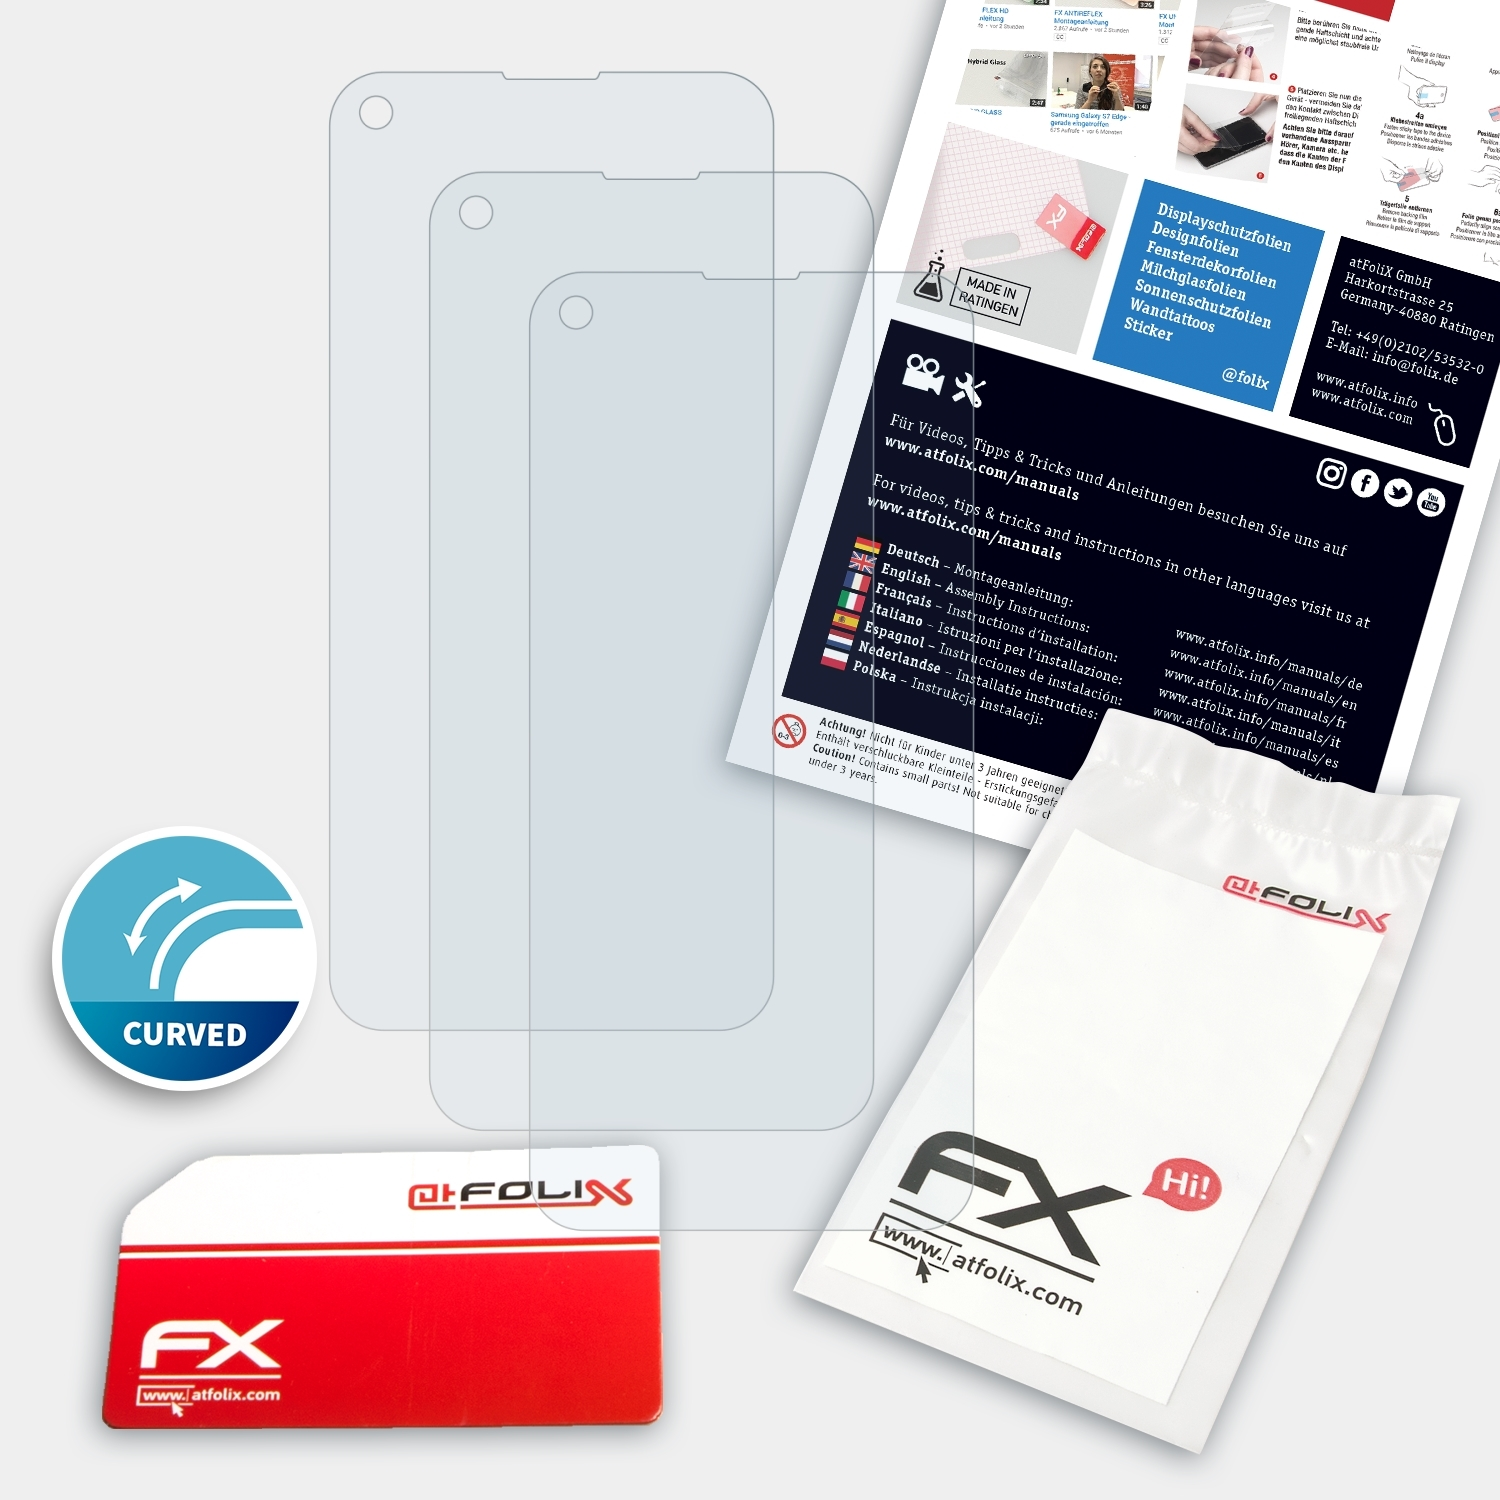 ATFOLIX Displayschutz(für FX-ActiFleX K61) LG 3x